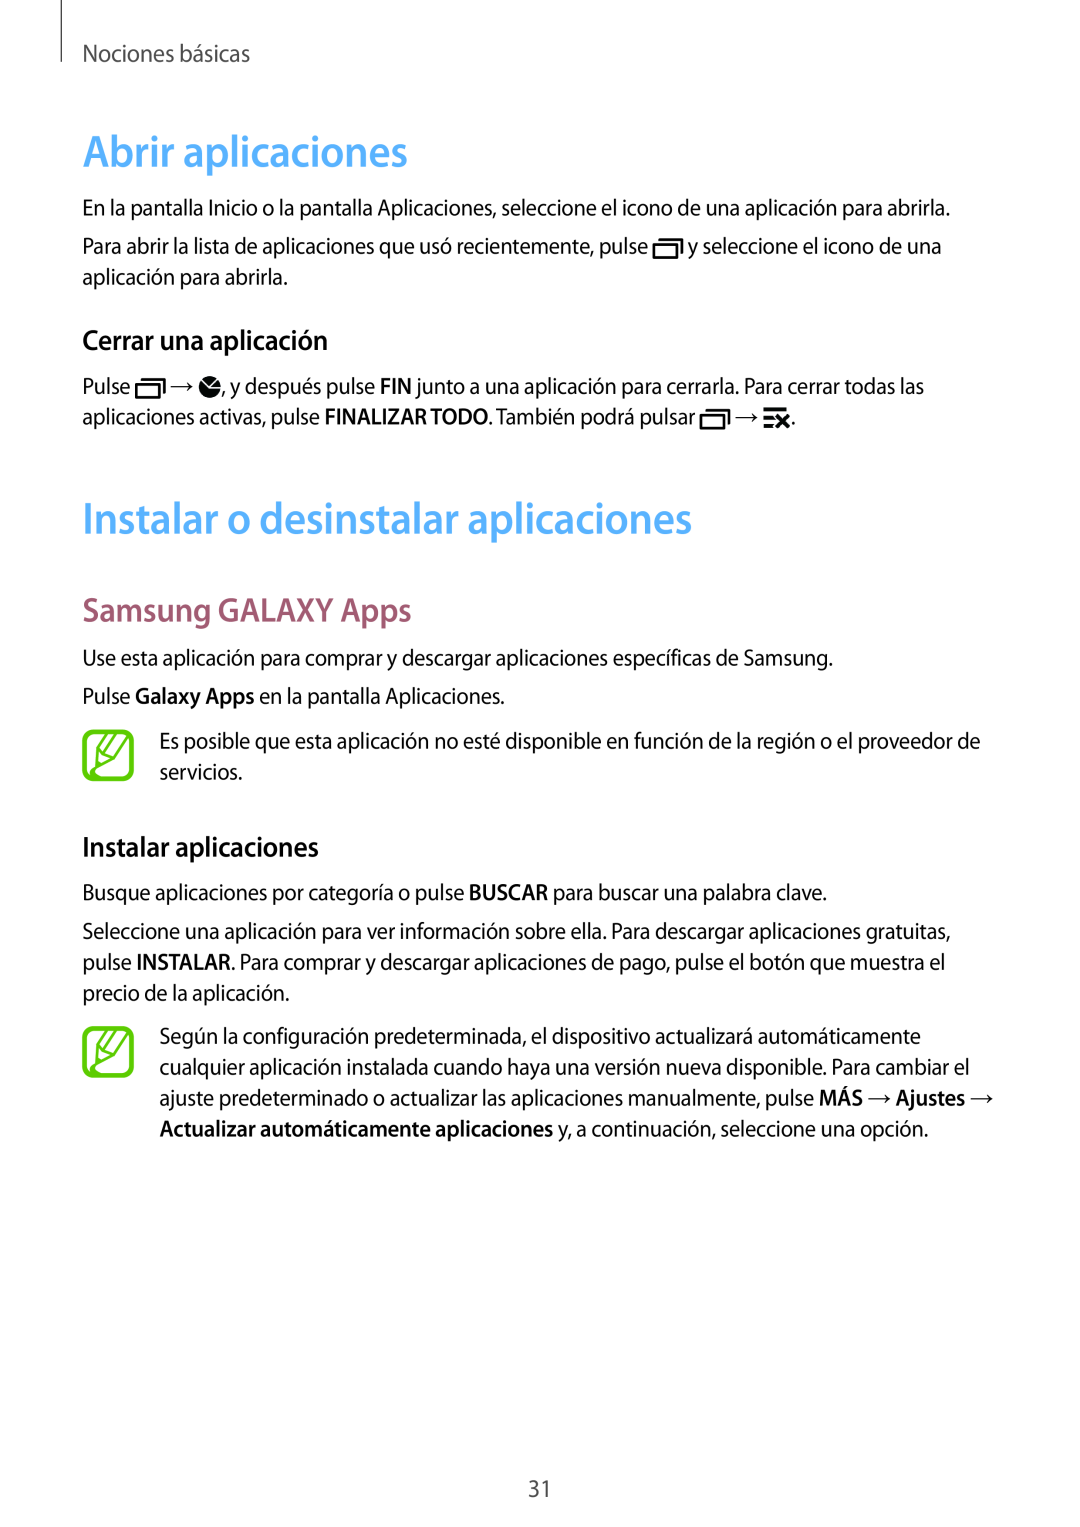 Samsung SM-G900FZBAPHE Abrir aplicaciones, Instalar o desinstalar aplicaciones, Samsung GALAXY Apps, Cerrar una aplicación 